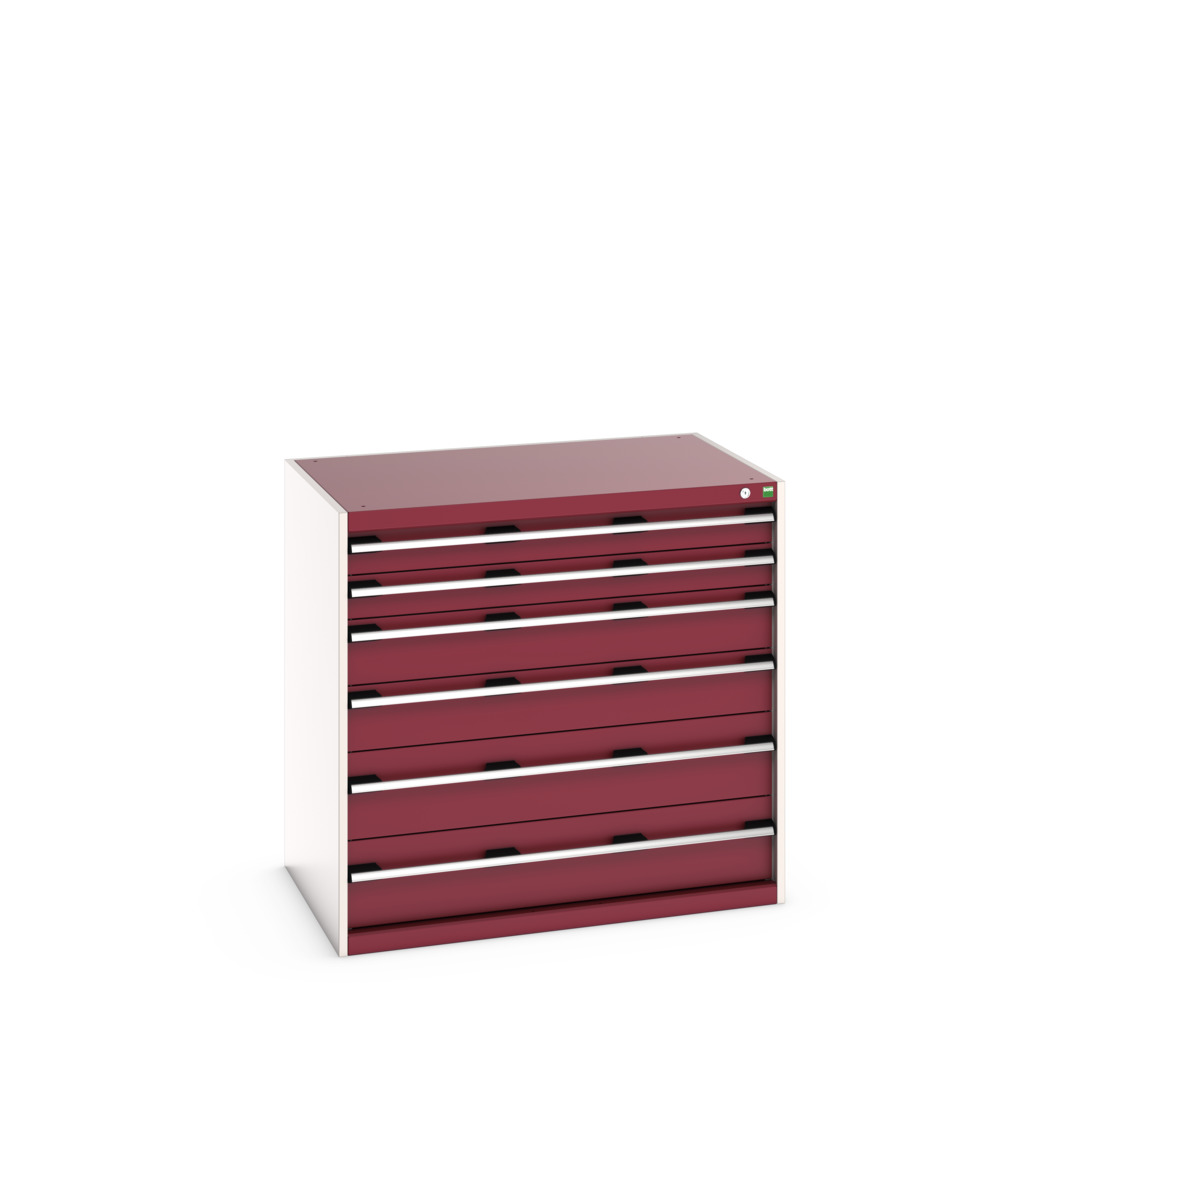 40029107.24V - cubio drawer cabinet